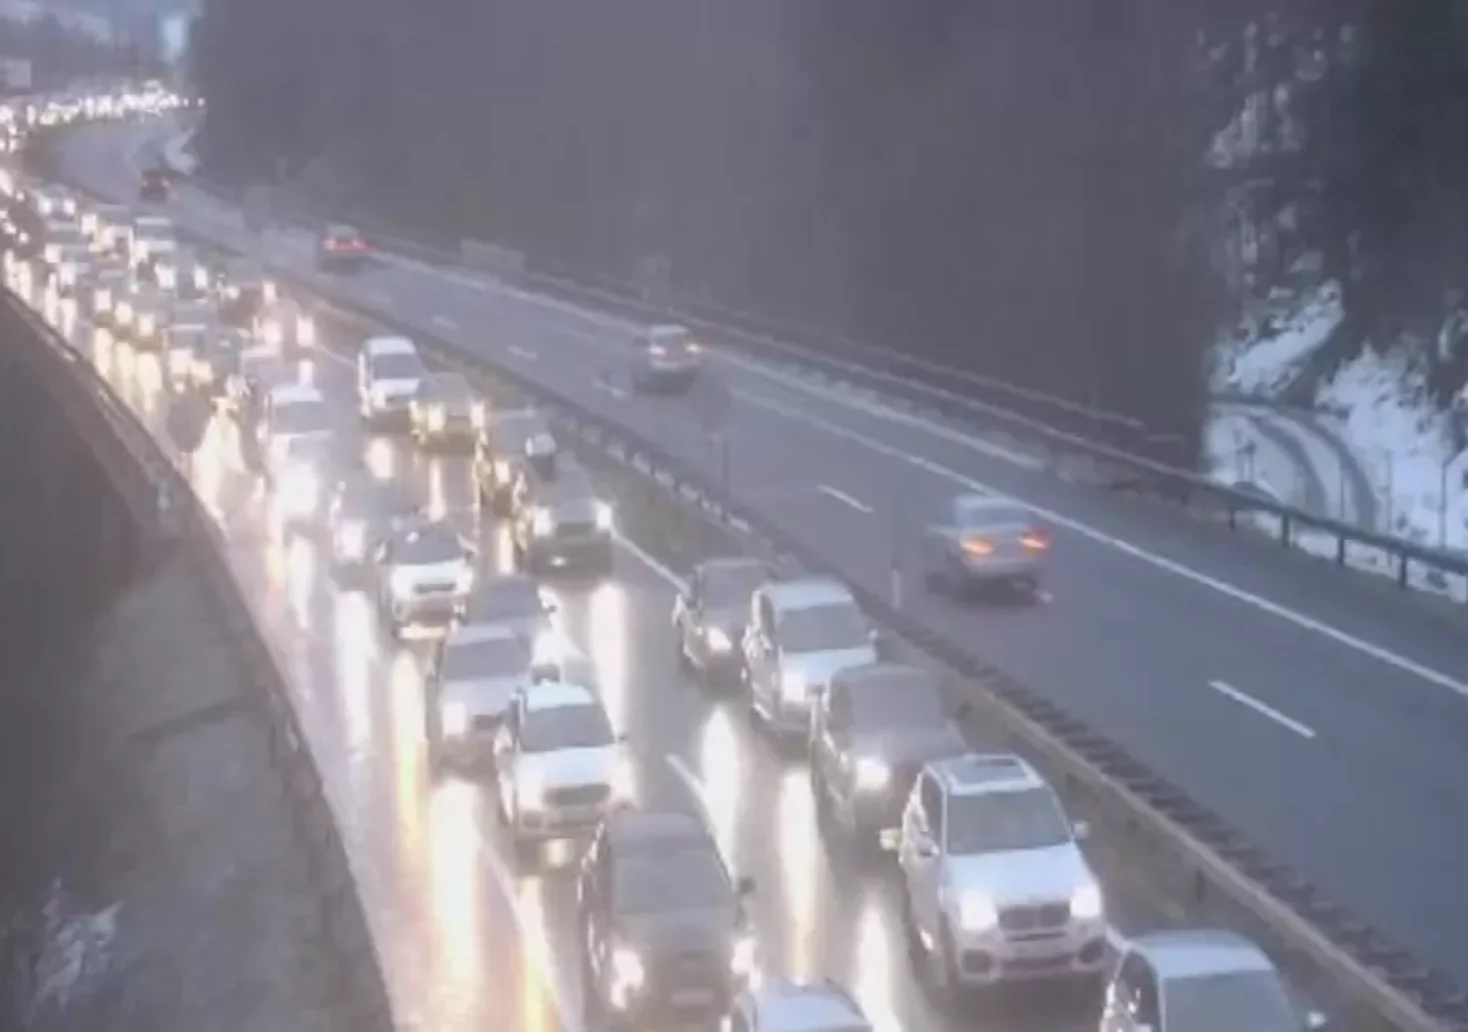 Probleme auf A2 und A9: Staus und winterliches Wetter behindern Verkehr